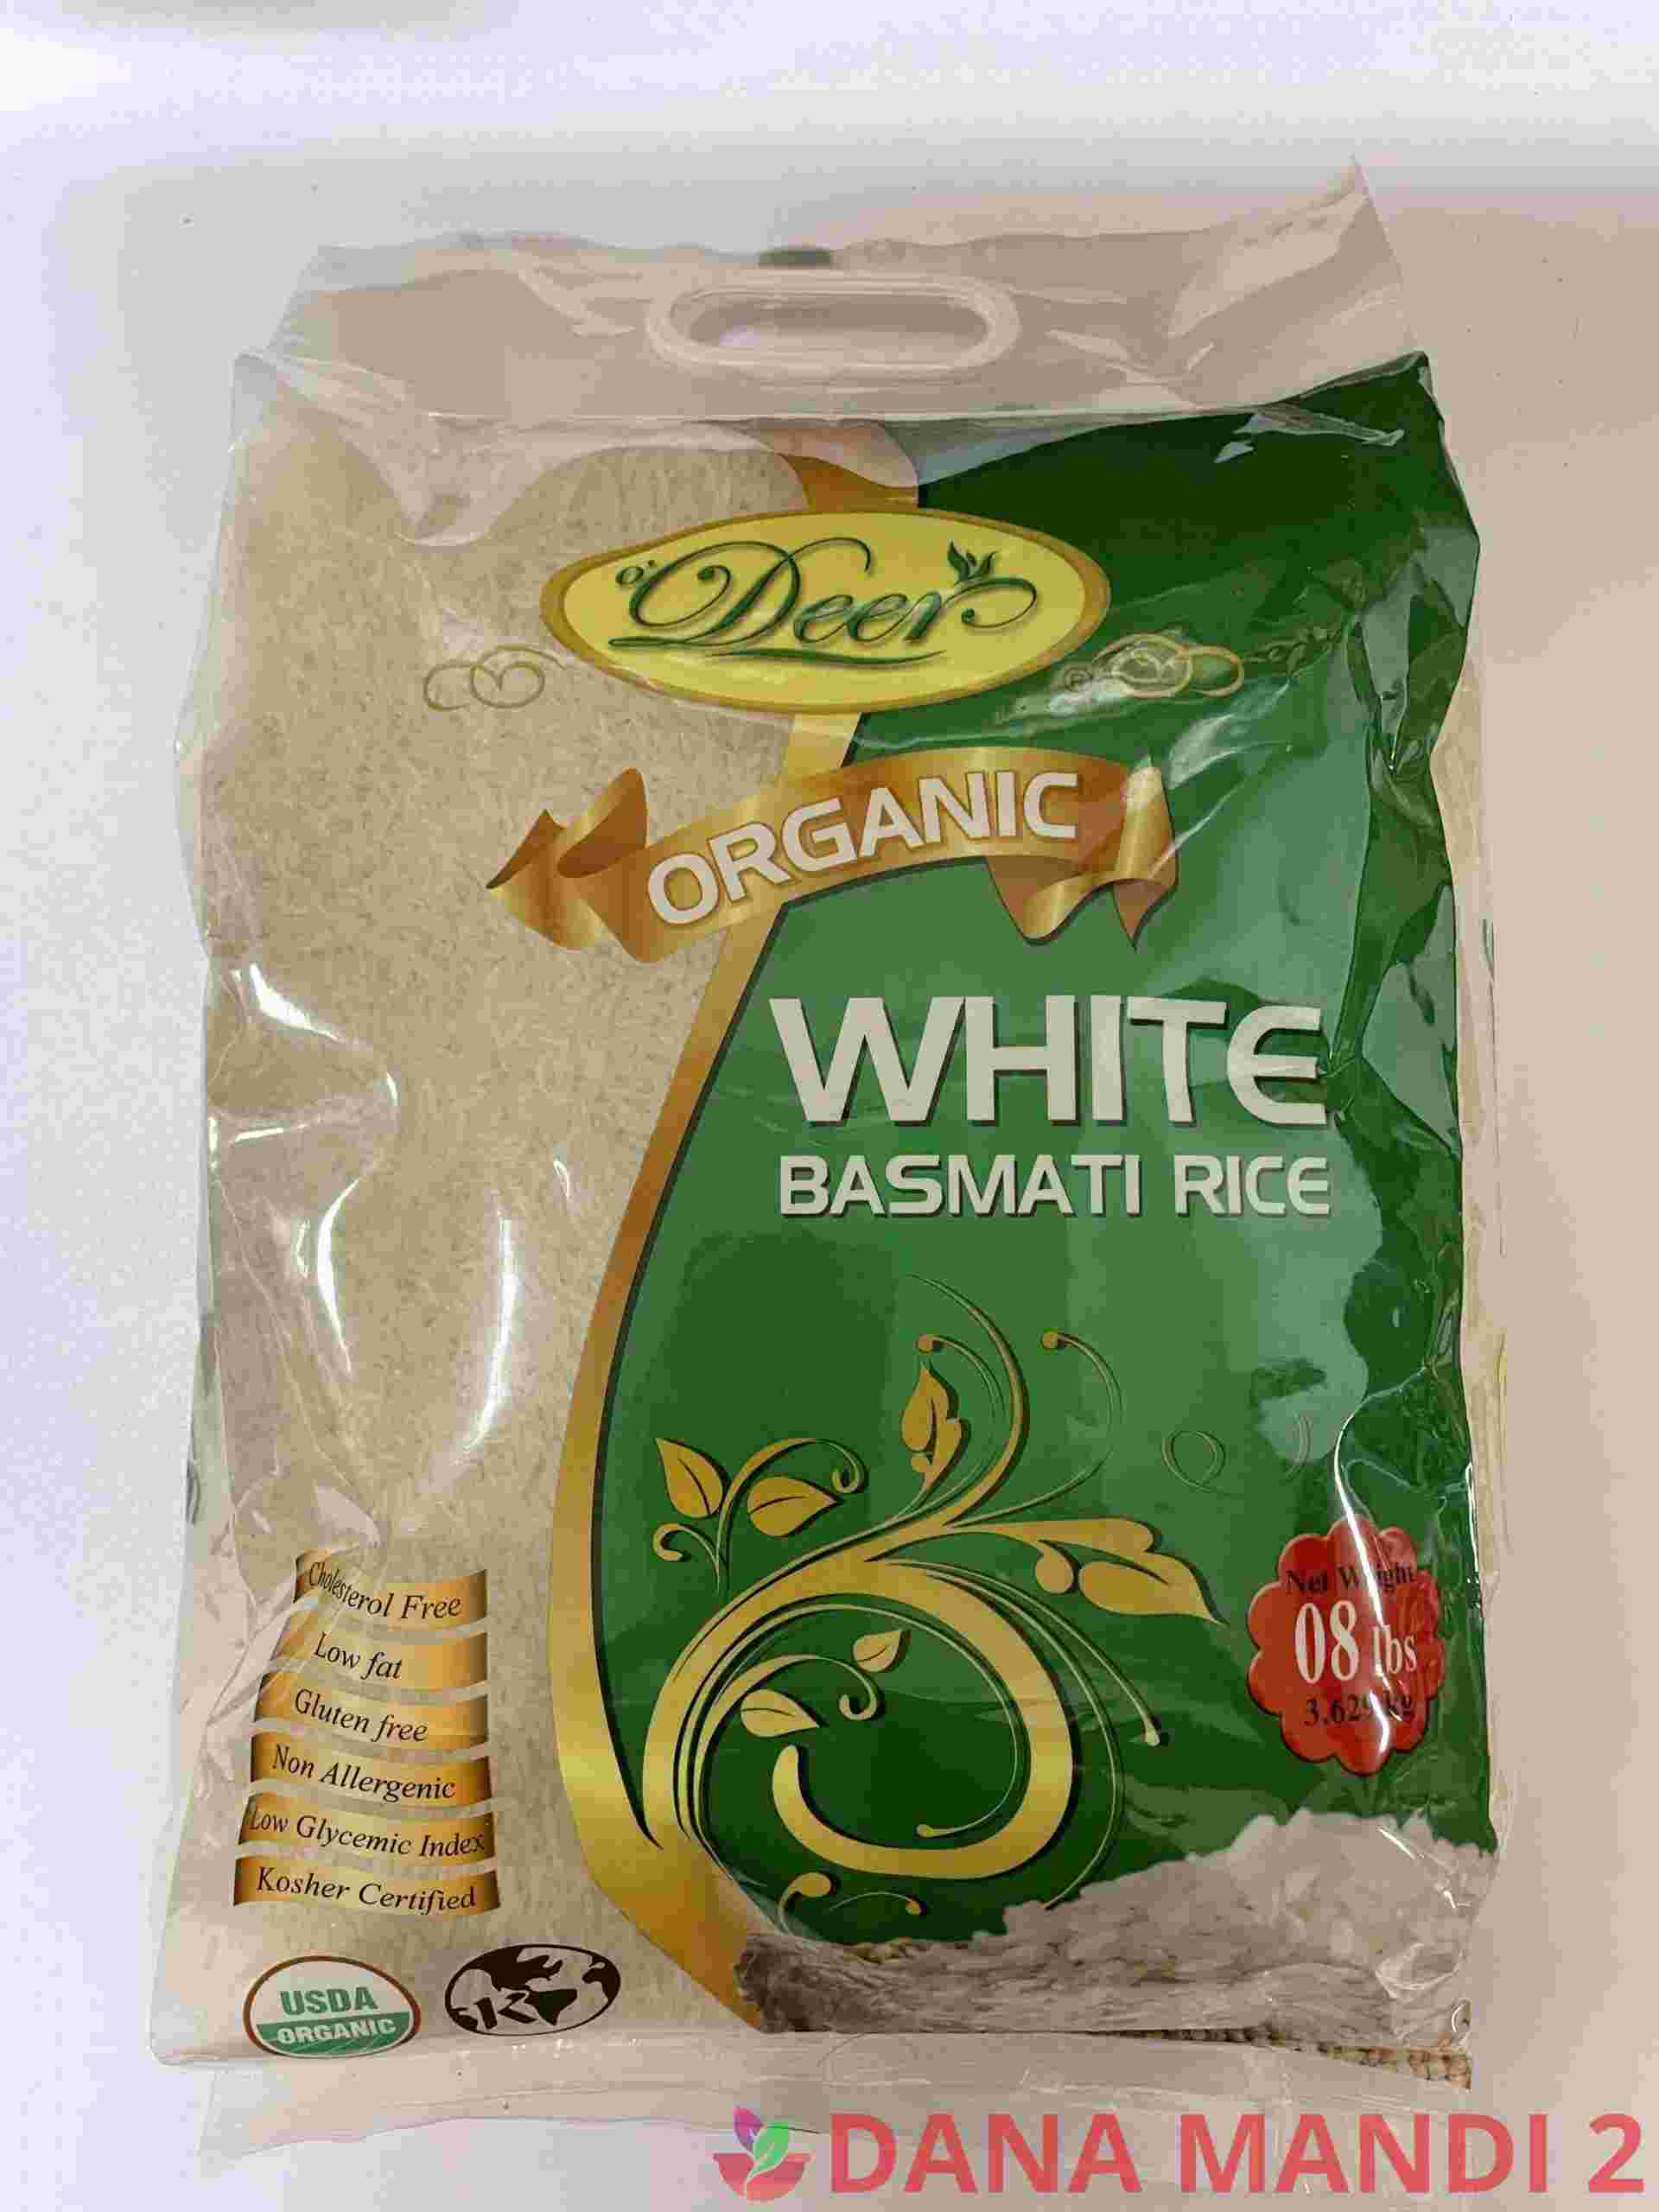 Deer Organic White Basmati Rice